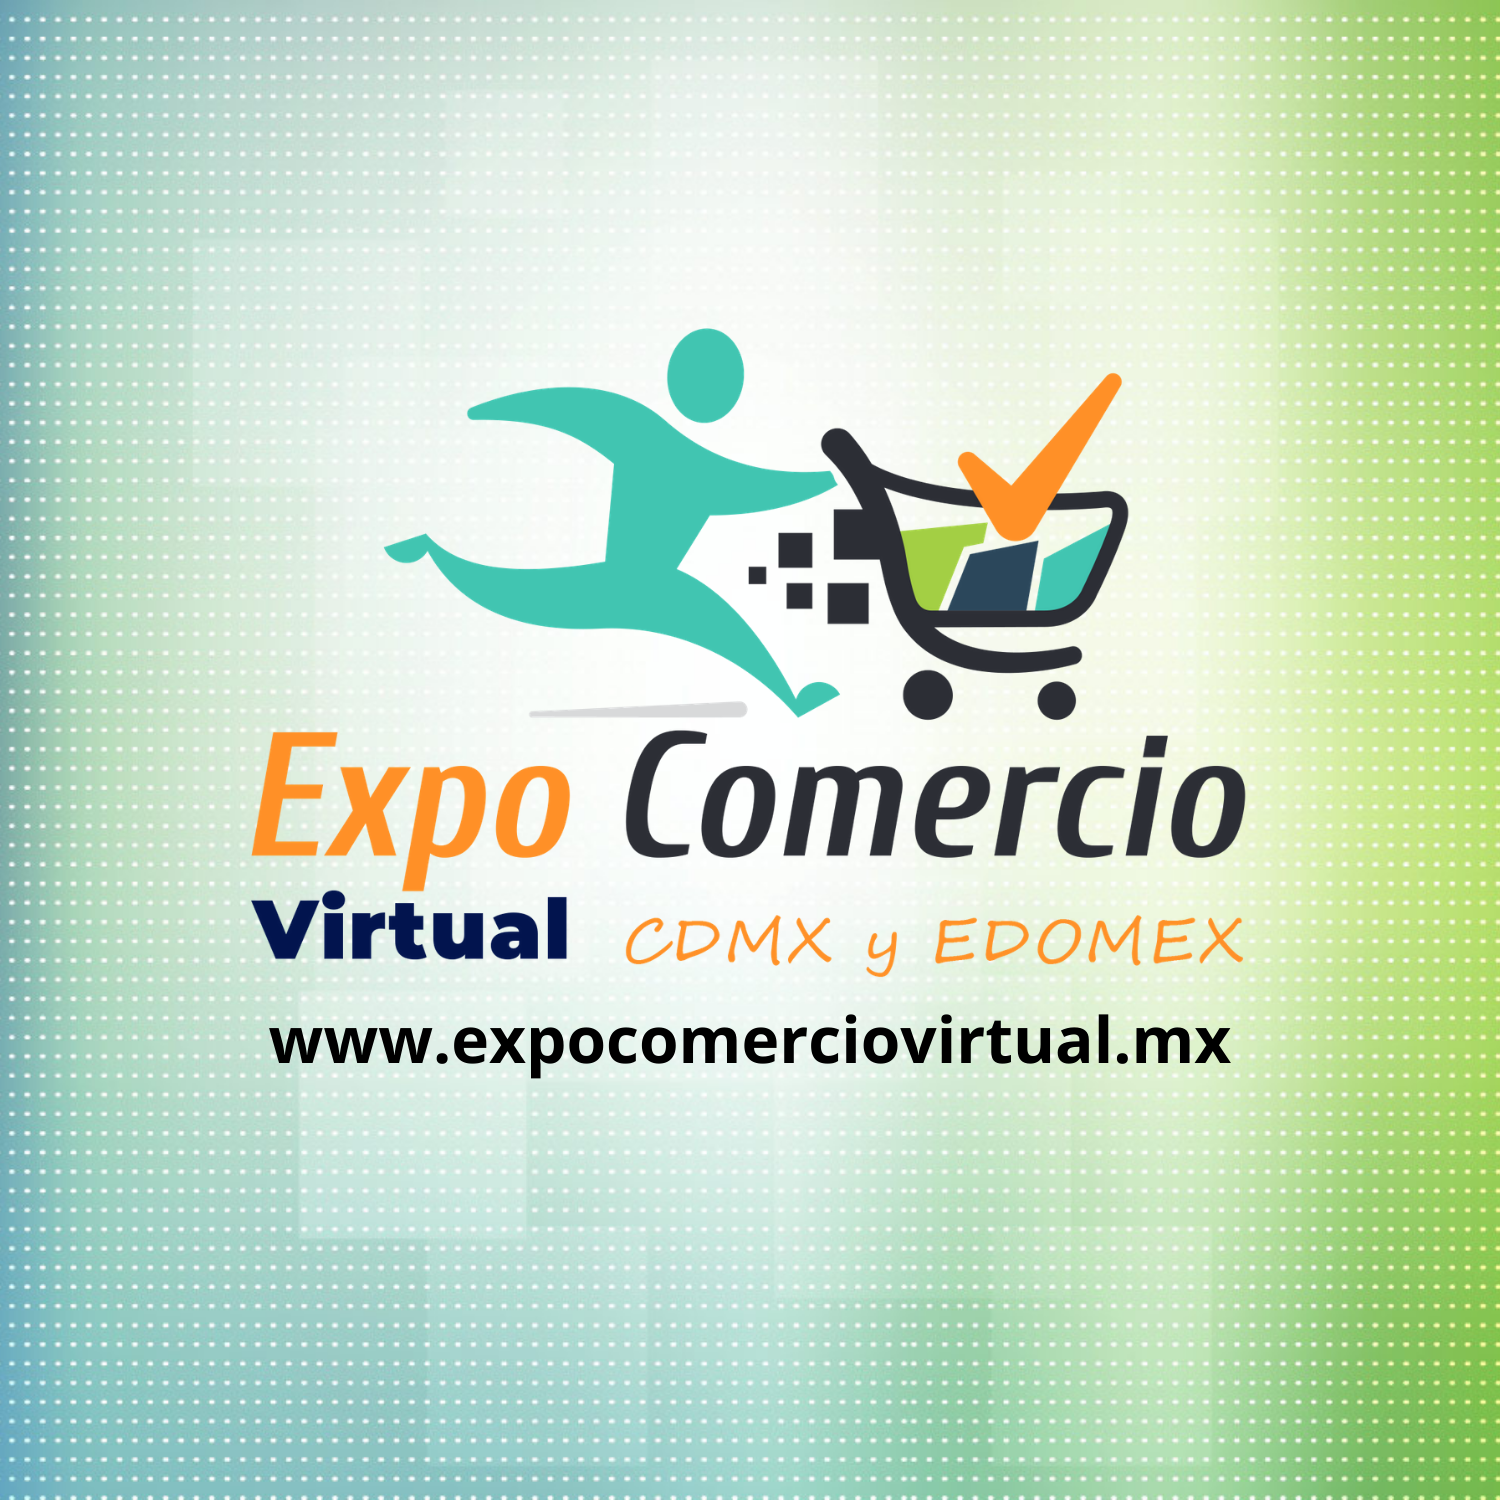 EXPO COMERCIO Virtual CDMX y EDOMÉX